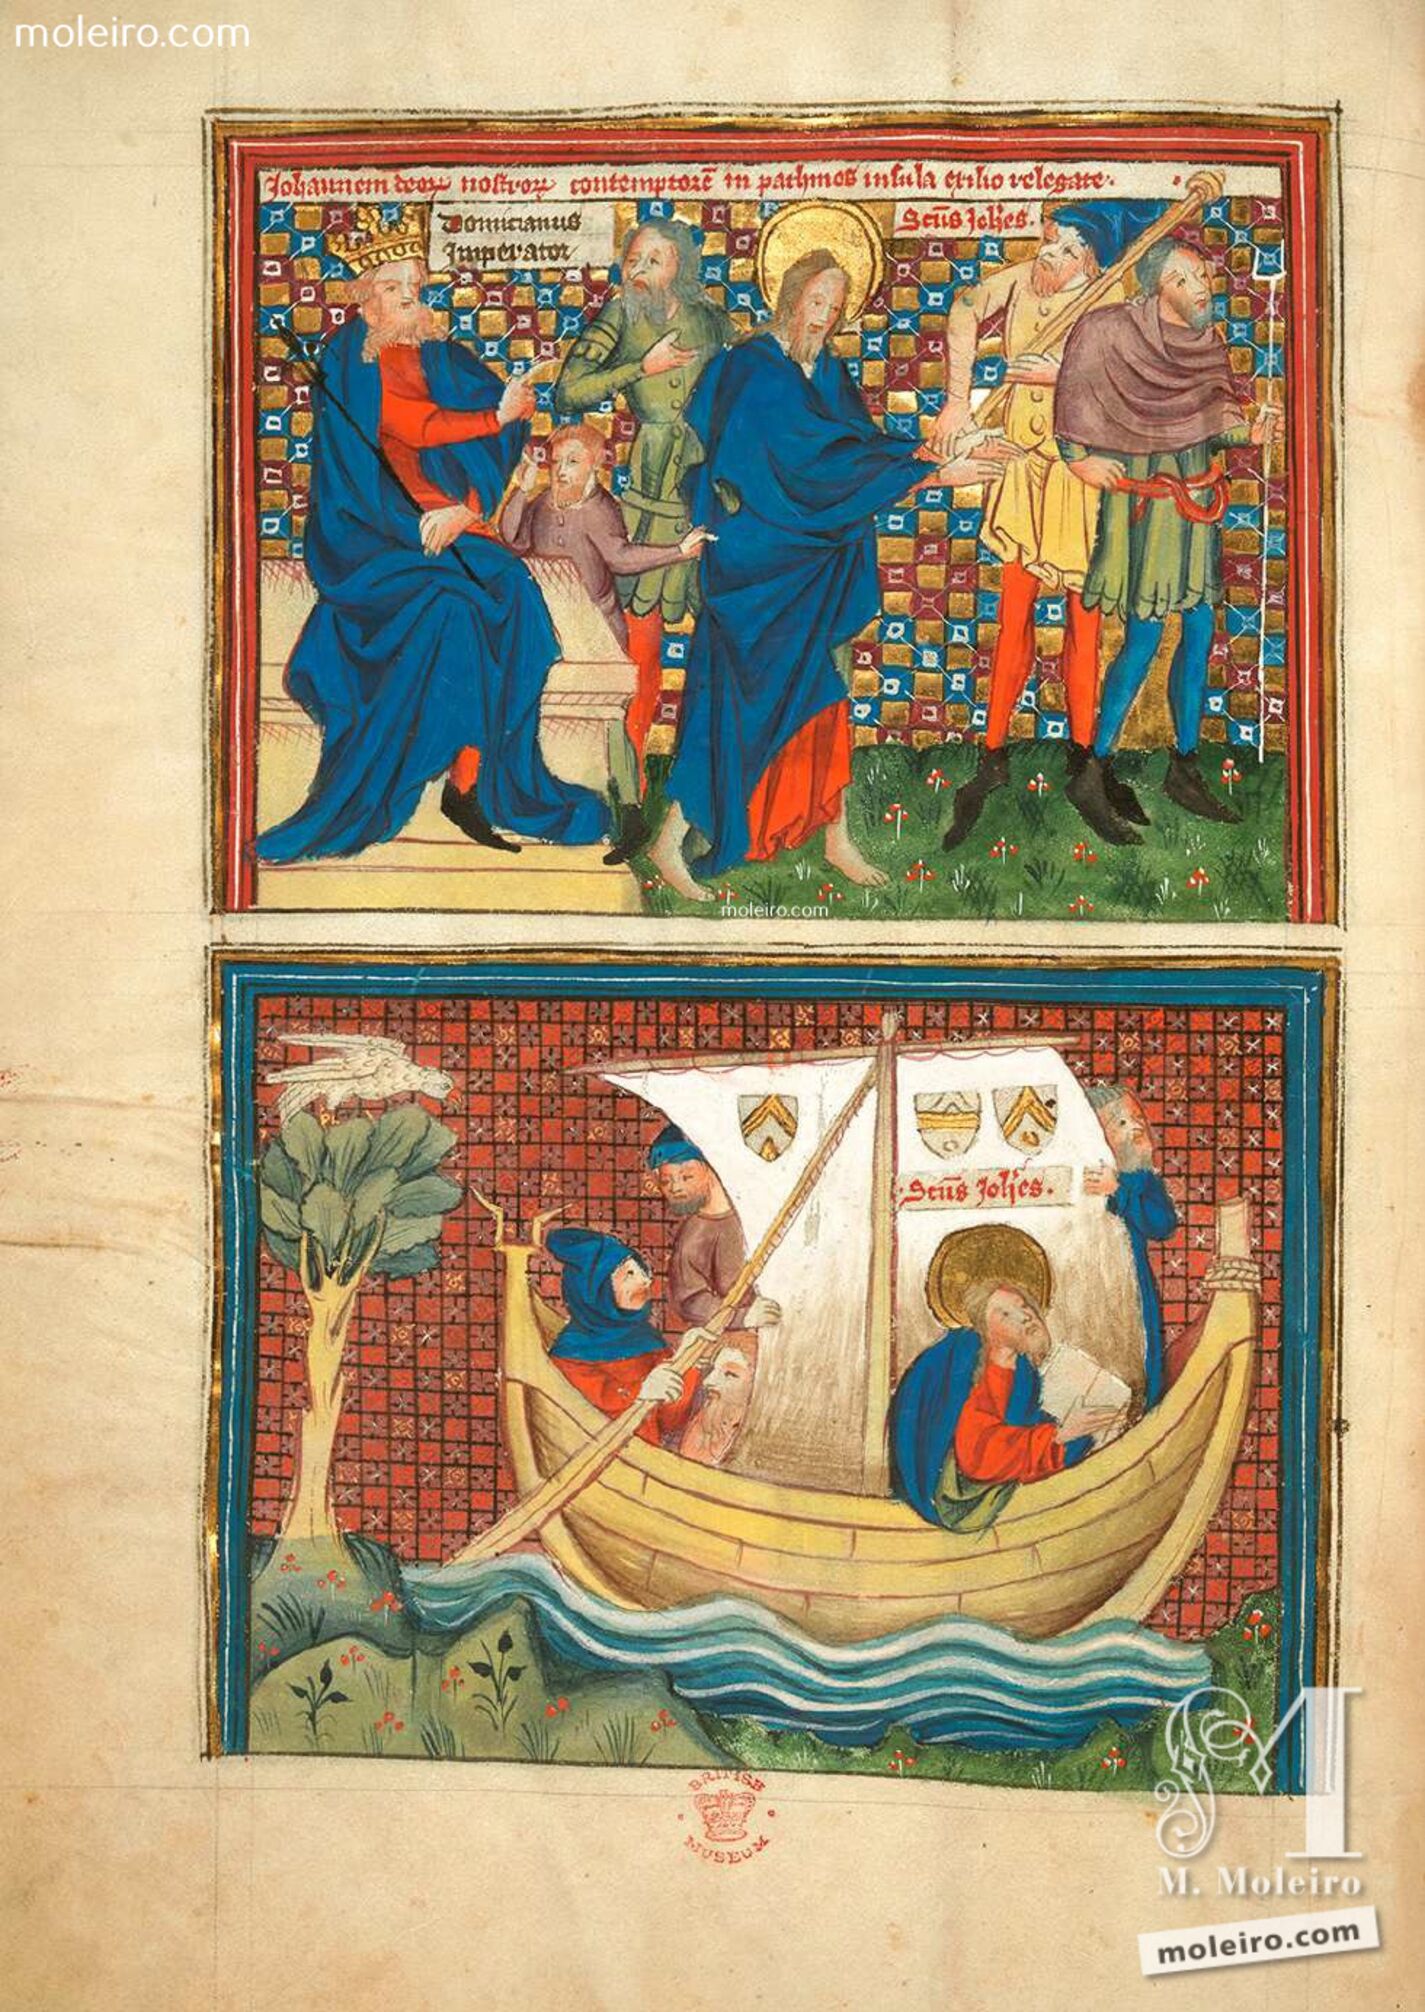 f. 2v · Domiciano destierra a san Juan a la isla de Patmos. San Juan se dirige a Patmos en barco.